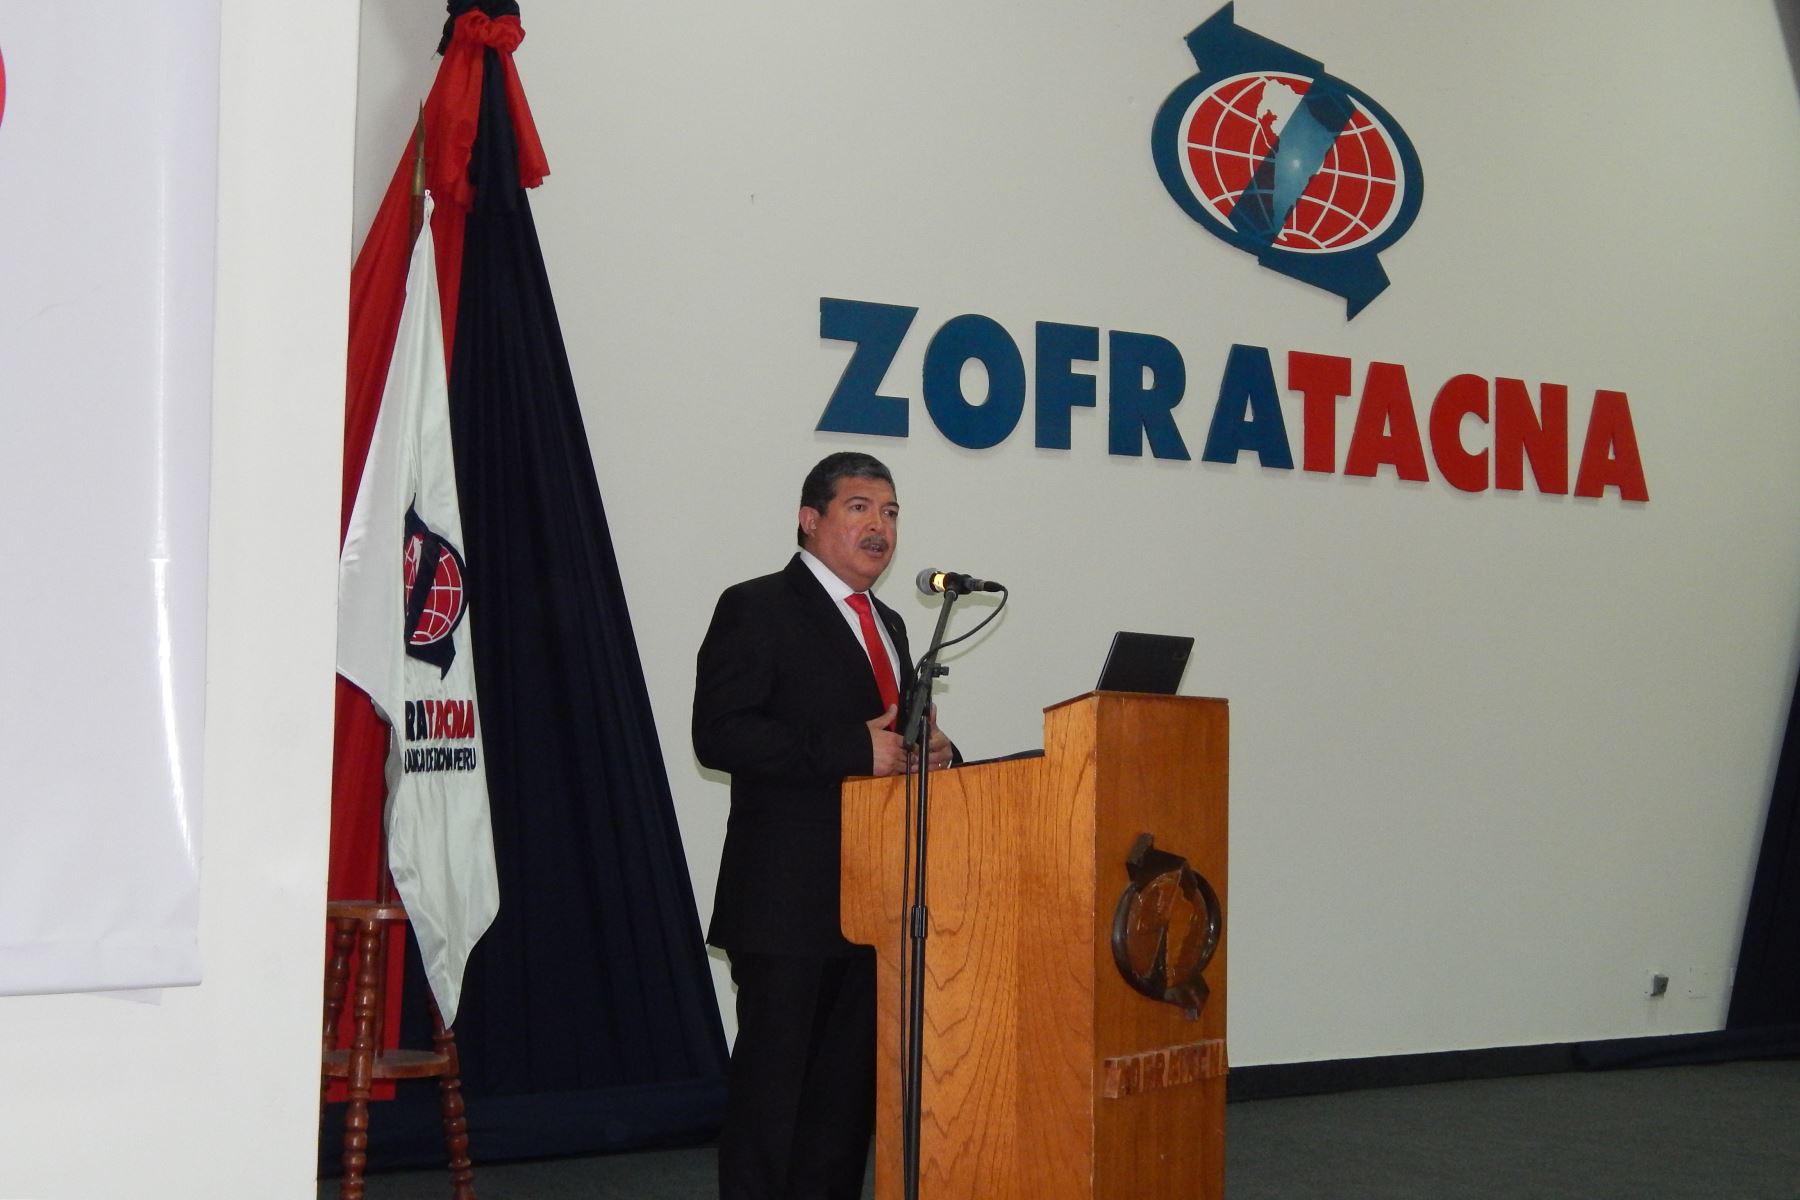 Agencia Regional de Desarrollo promoverá inversión en Zofratacna, afirma gobernador regional, Omar Jiménez.